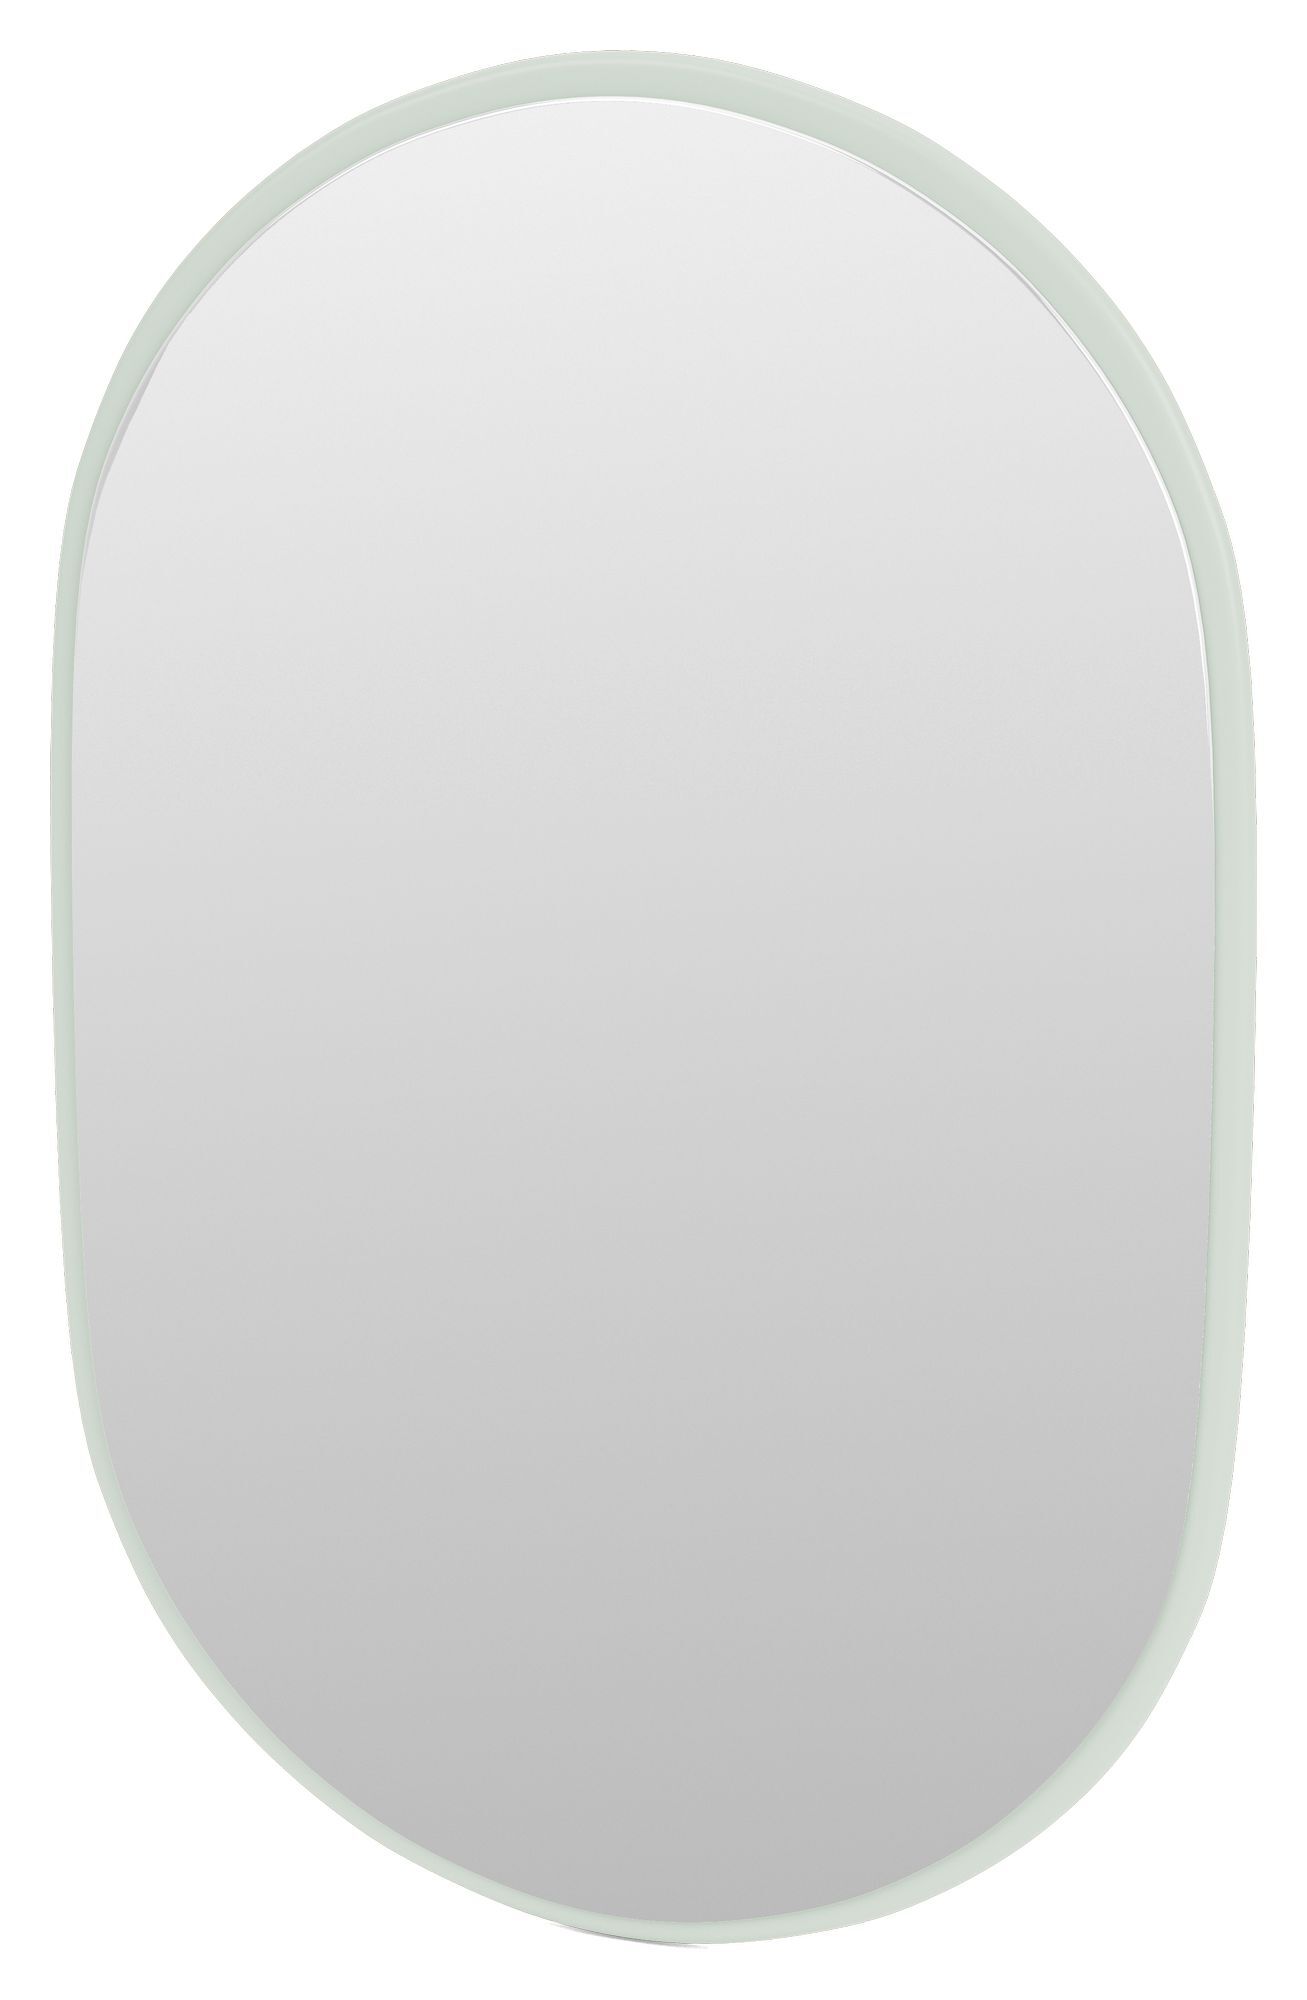 Montana LOOK Ovalt speil, 161-Mist   Unoliving